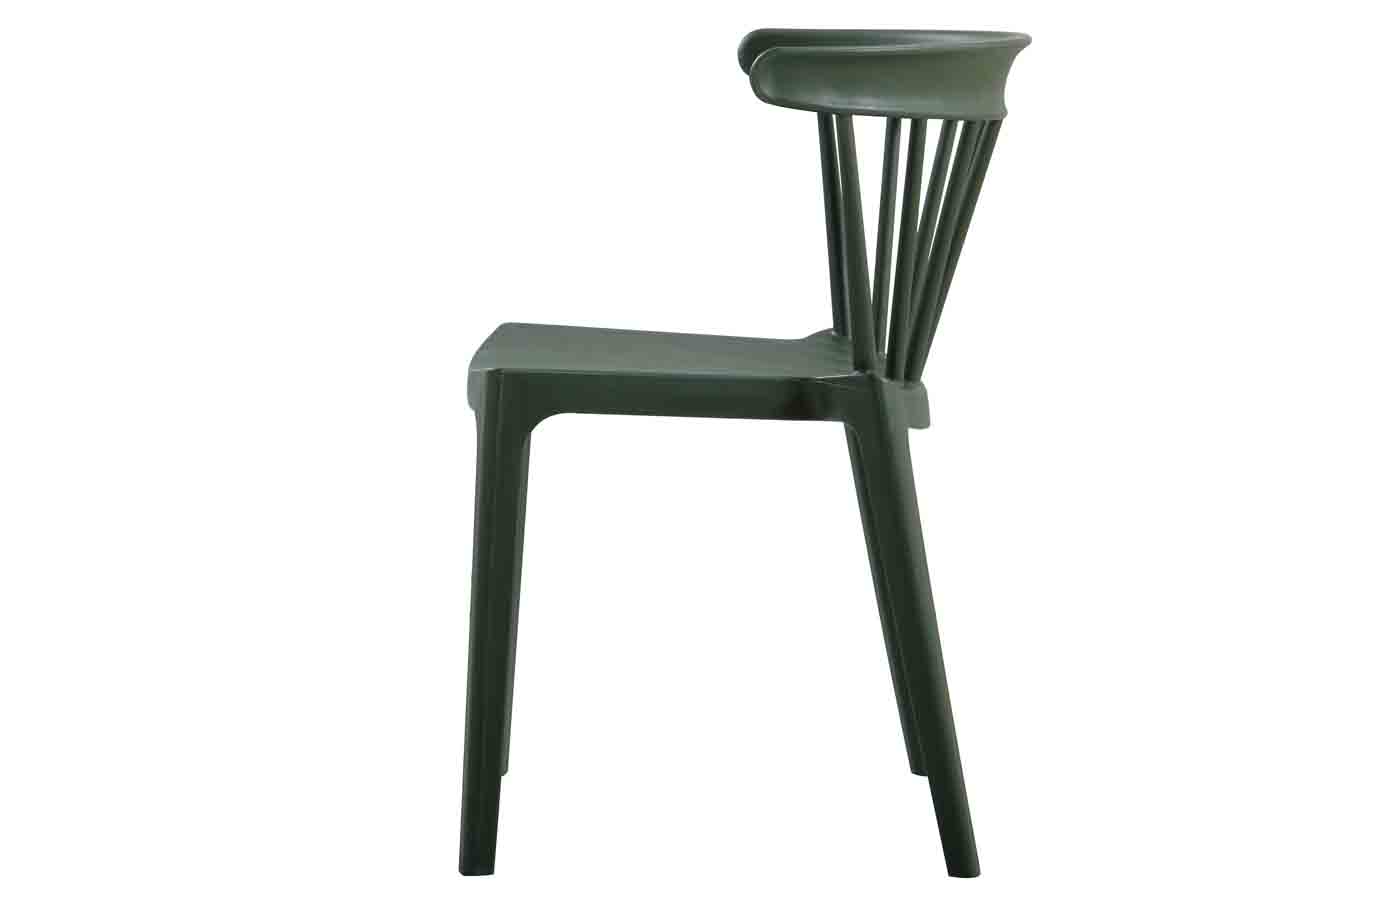 Cooler Stapelstuhl Bliss, gefertigt aus Kunststoff, auch für den Außenbereich geeignet